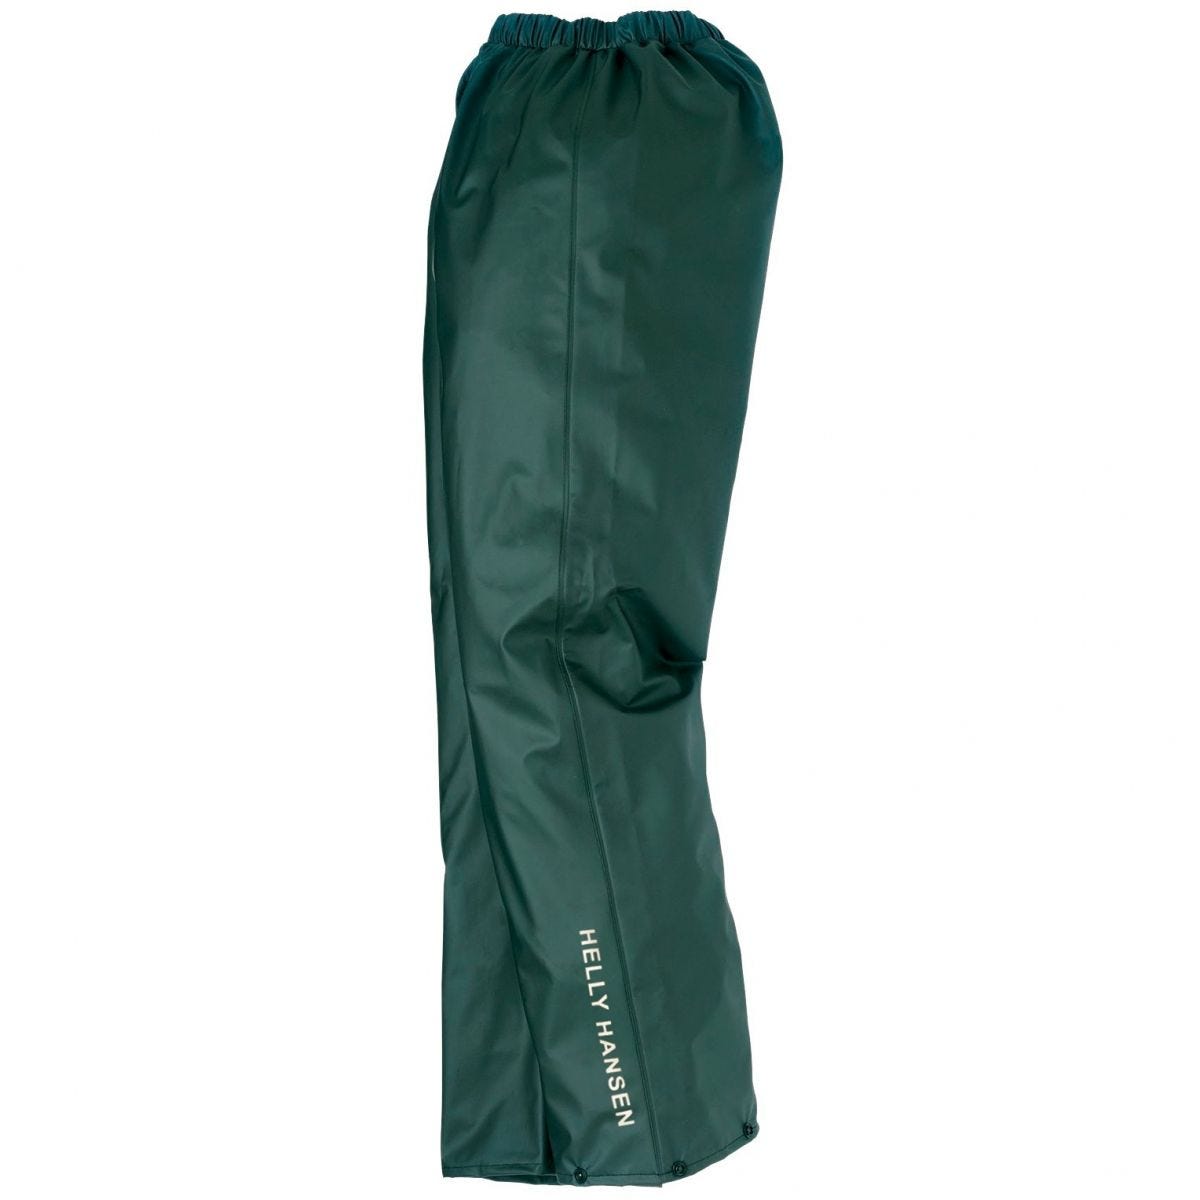 Pantalon de pluie imperméable Voss vert - Helly Hansen - Taille 2XL 0